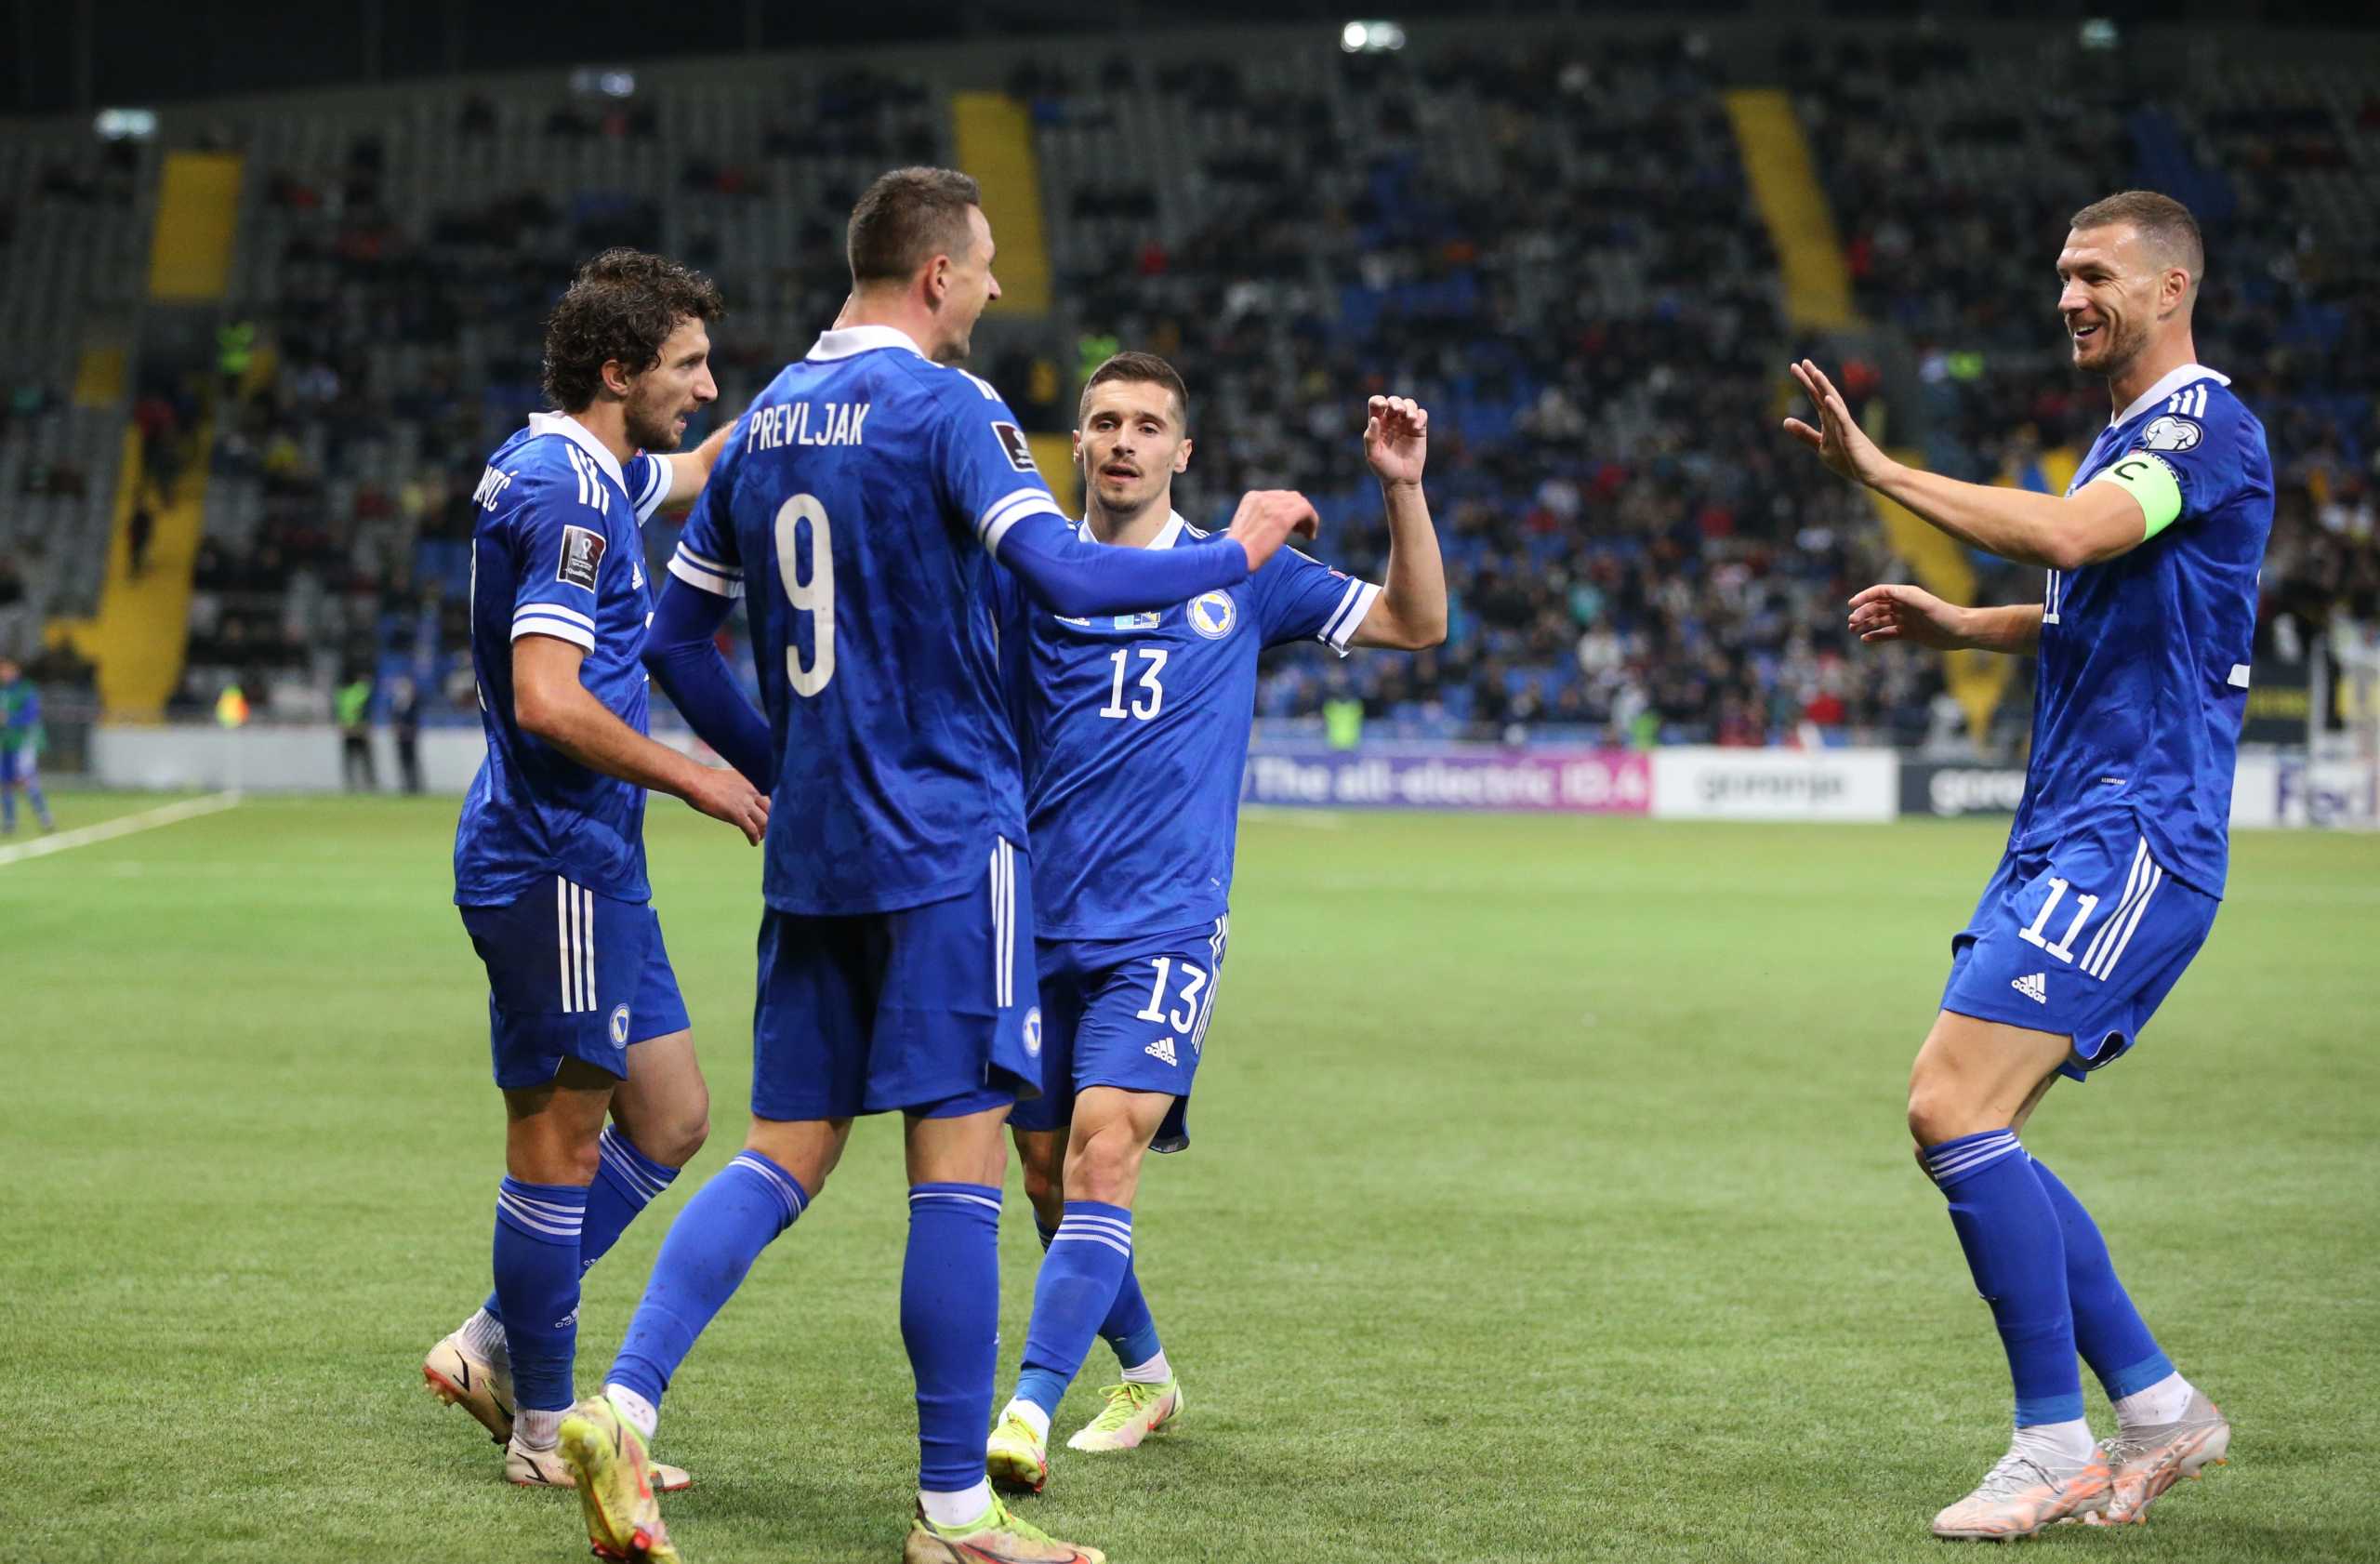 Προκριματικά Μουντιάλ 2022: Πρώτη νίκη για Βοσνία, οριστικά νοκ άουτ οι Βούλγαροι